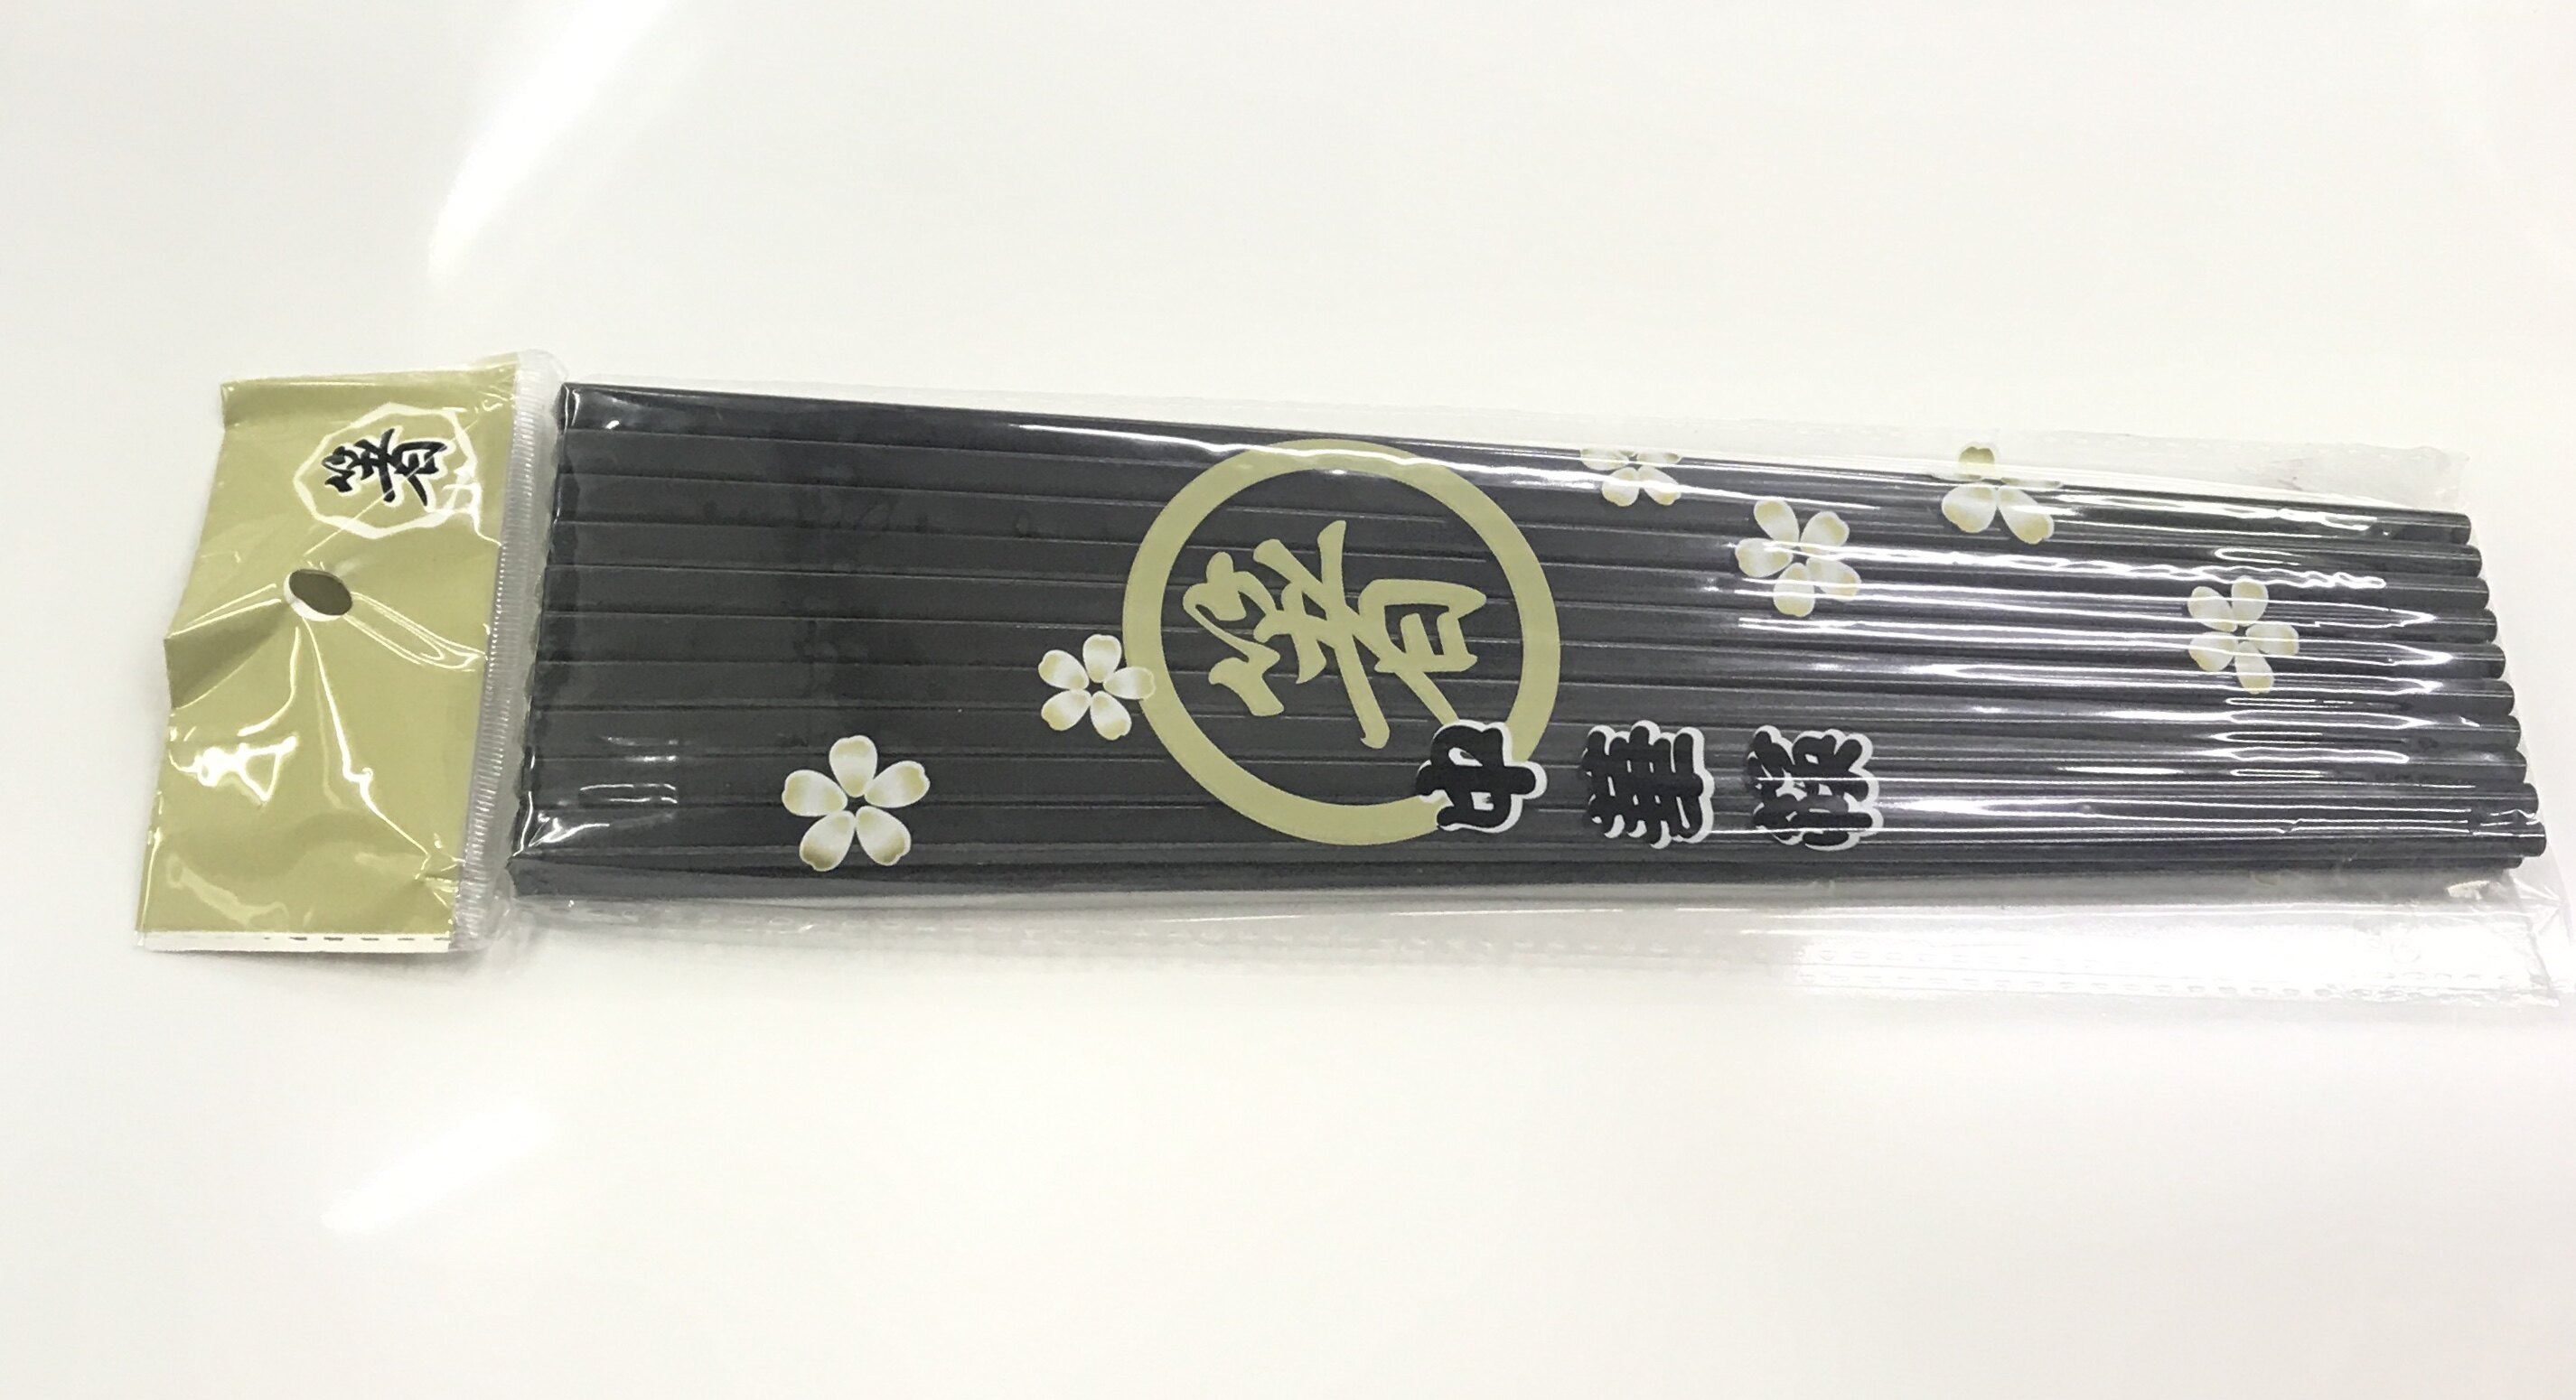 Chopsticks ตะเกียบเมลามีน สีดำ ยาว 27 ซม.บรรจุ 10 คู่